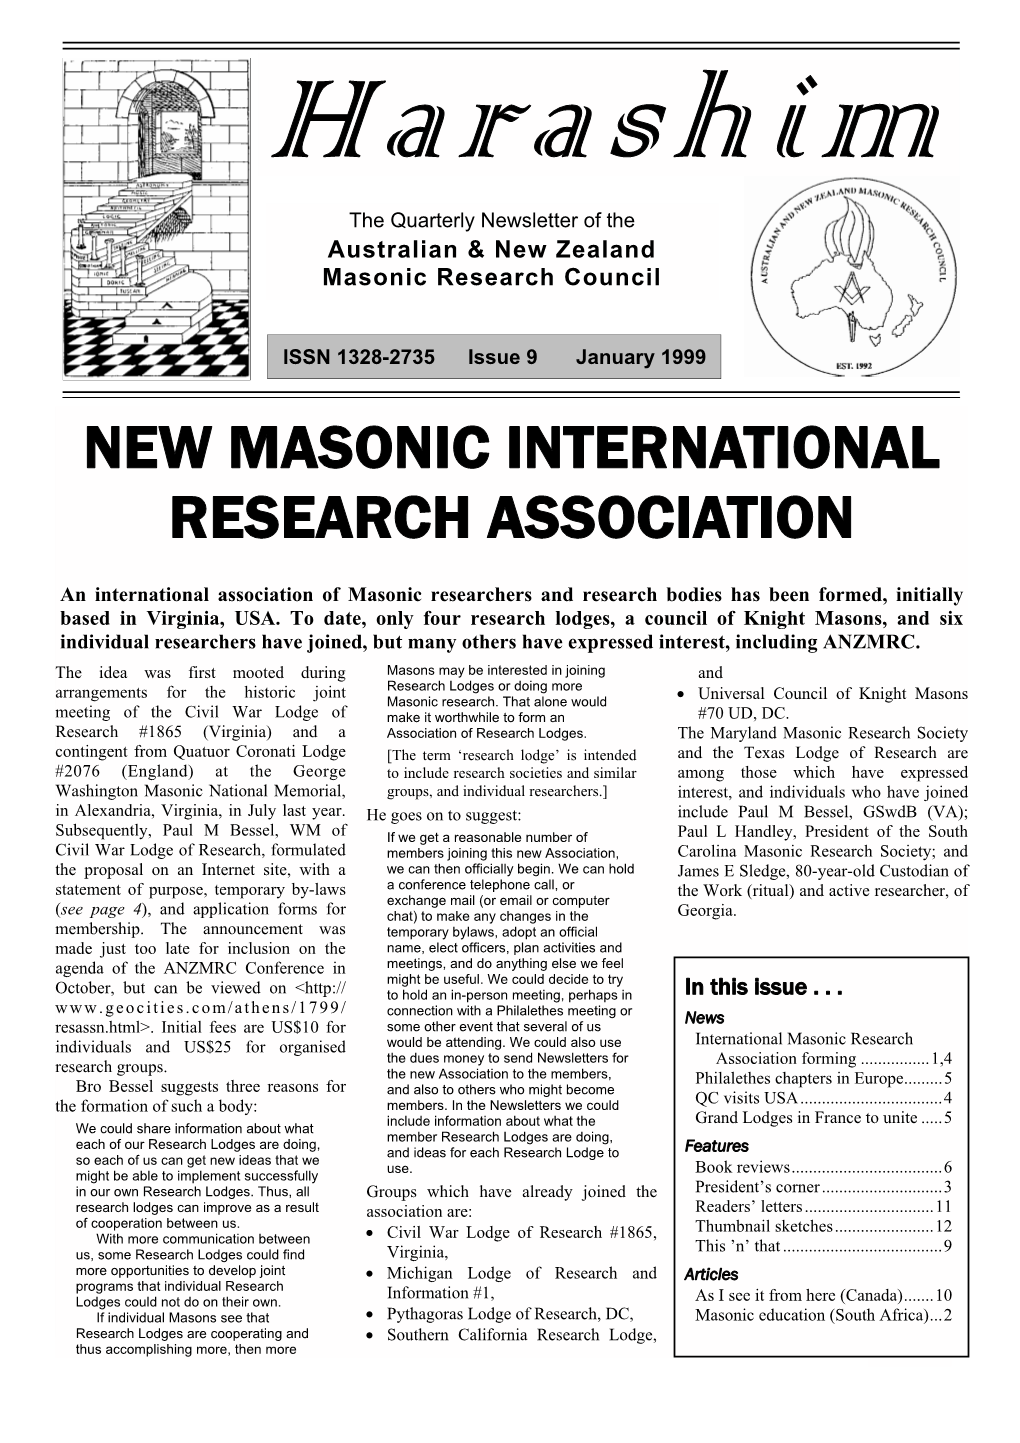 New Masonic International Research Association